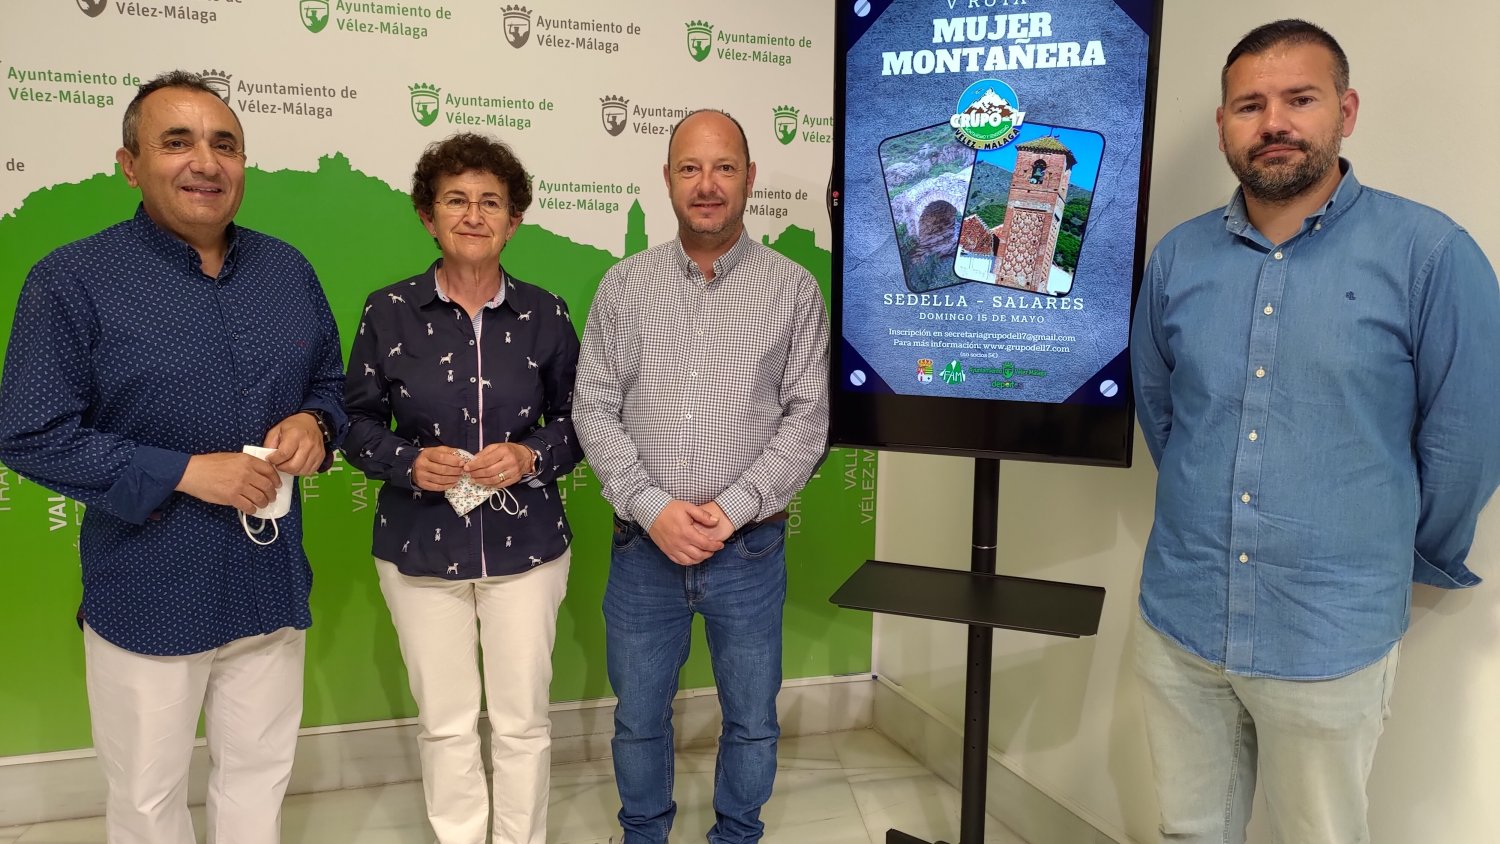 Deportes de Vélez-Málaga colabora con la 'V Ruta Mujer Montañera'